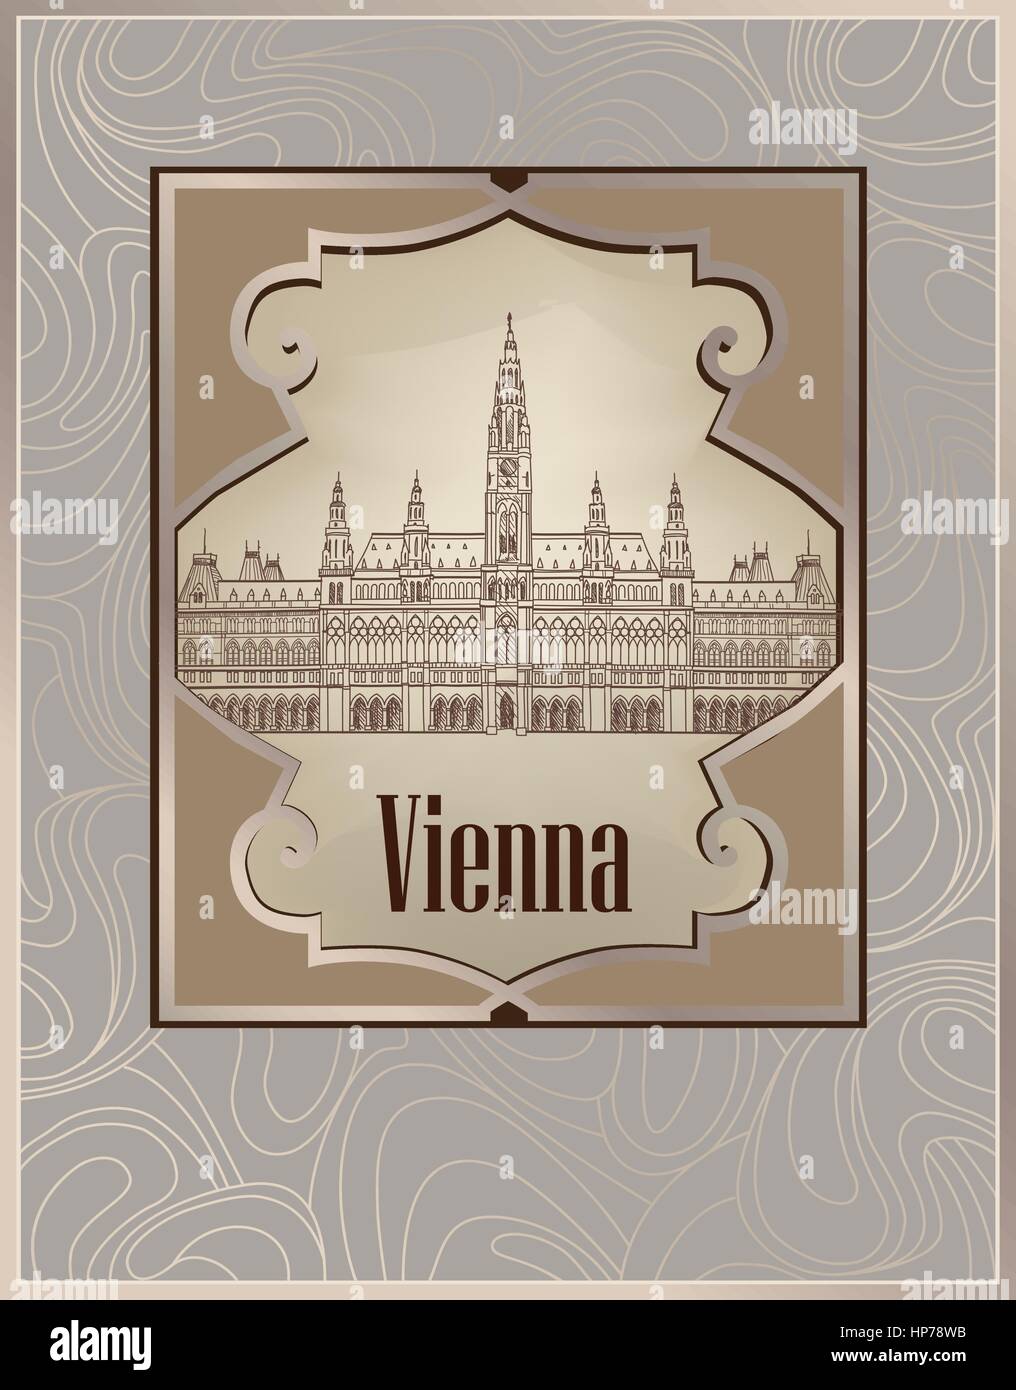 Reisen Österreich Hintergrund. Wiener Stadtbild, Wahrzeichen. Wien city street view Postkarte. Stock Vektor